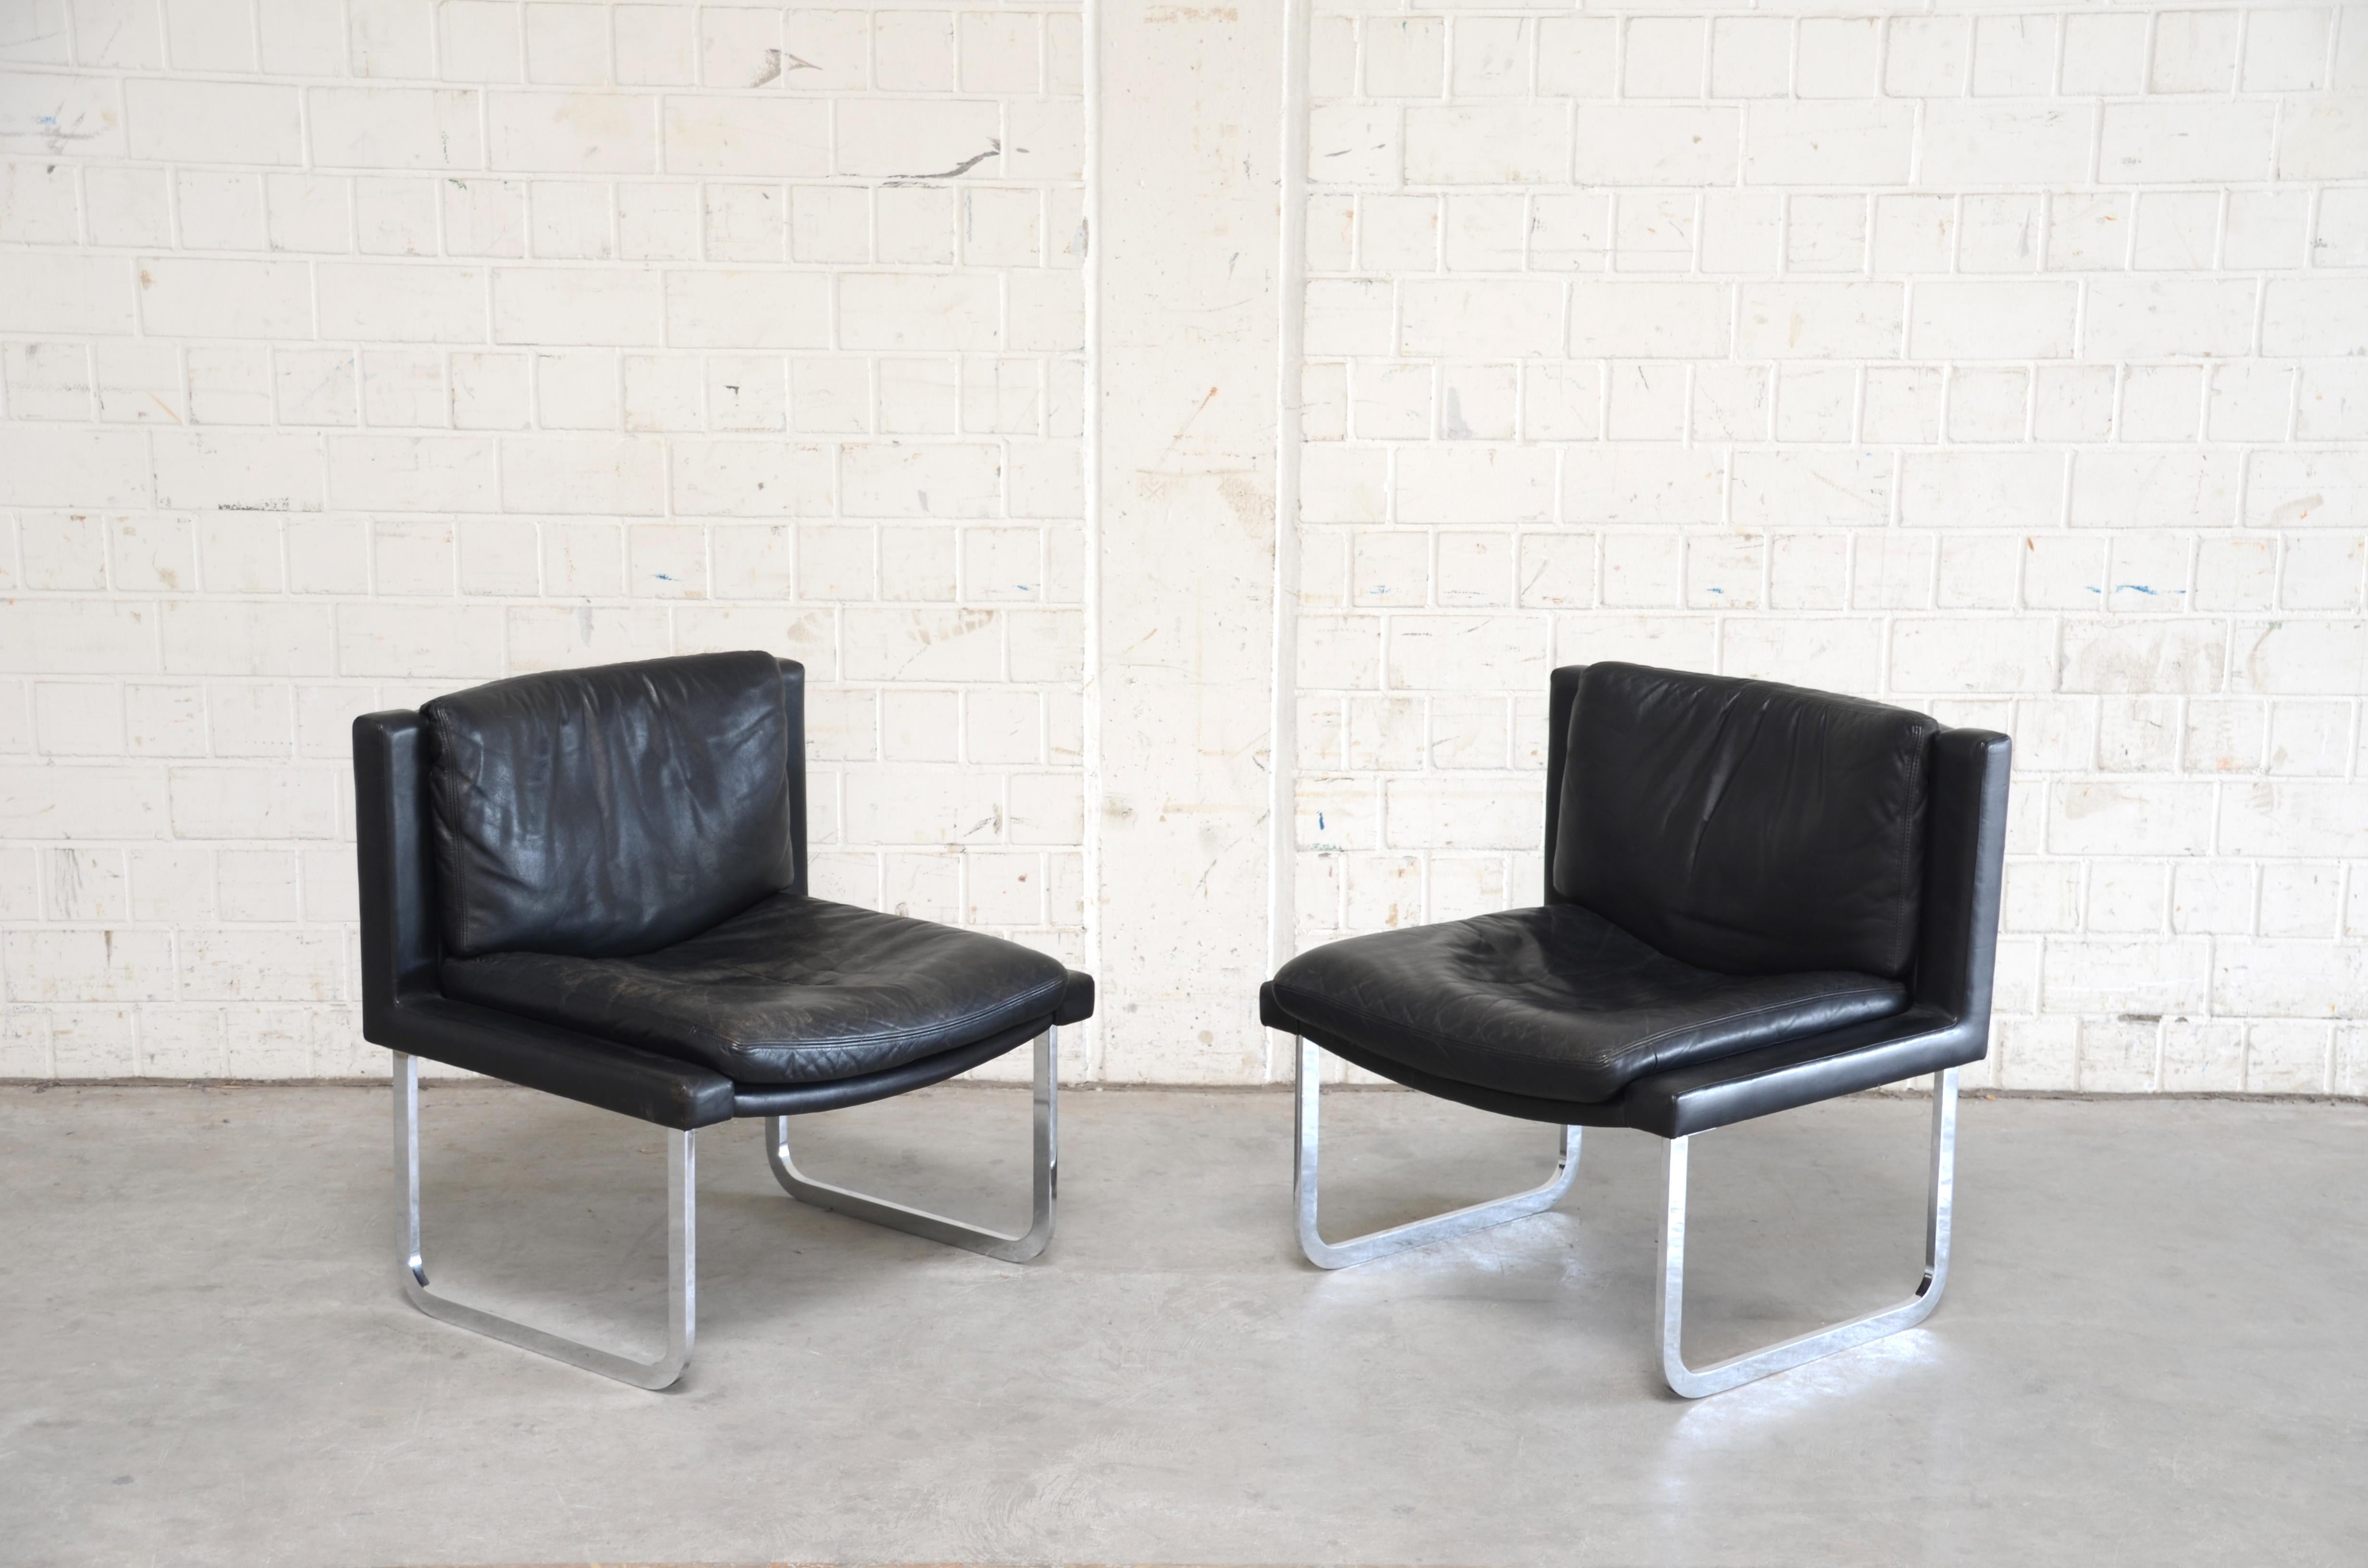 De Sede Lederstuhl RH 201.
Entwurf von Robert Haussmann.
Schwarzes Anilinleder.
Verchromte Füße und Stahl.
Ein schönes Paar Stühle.

 